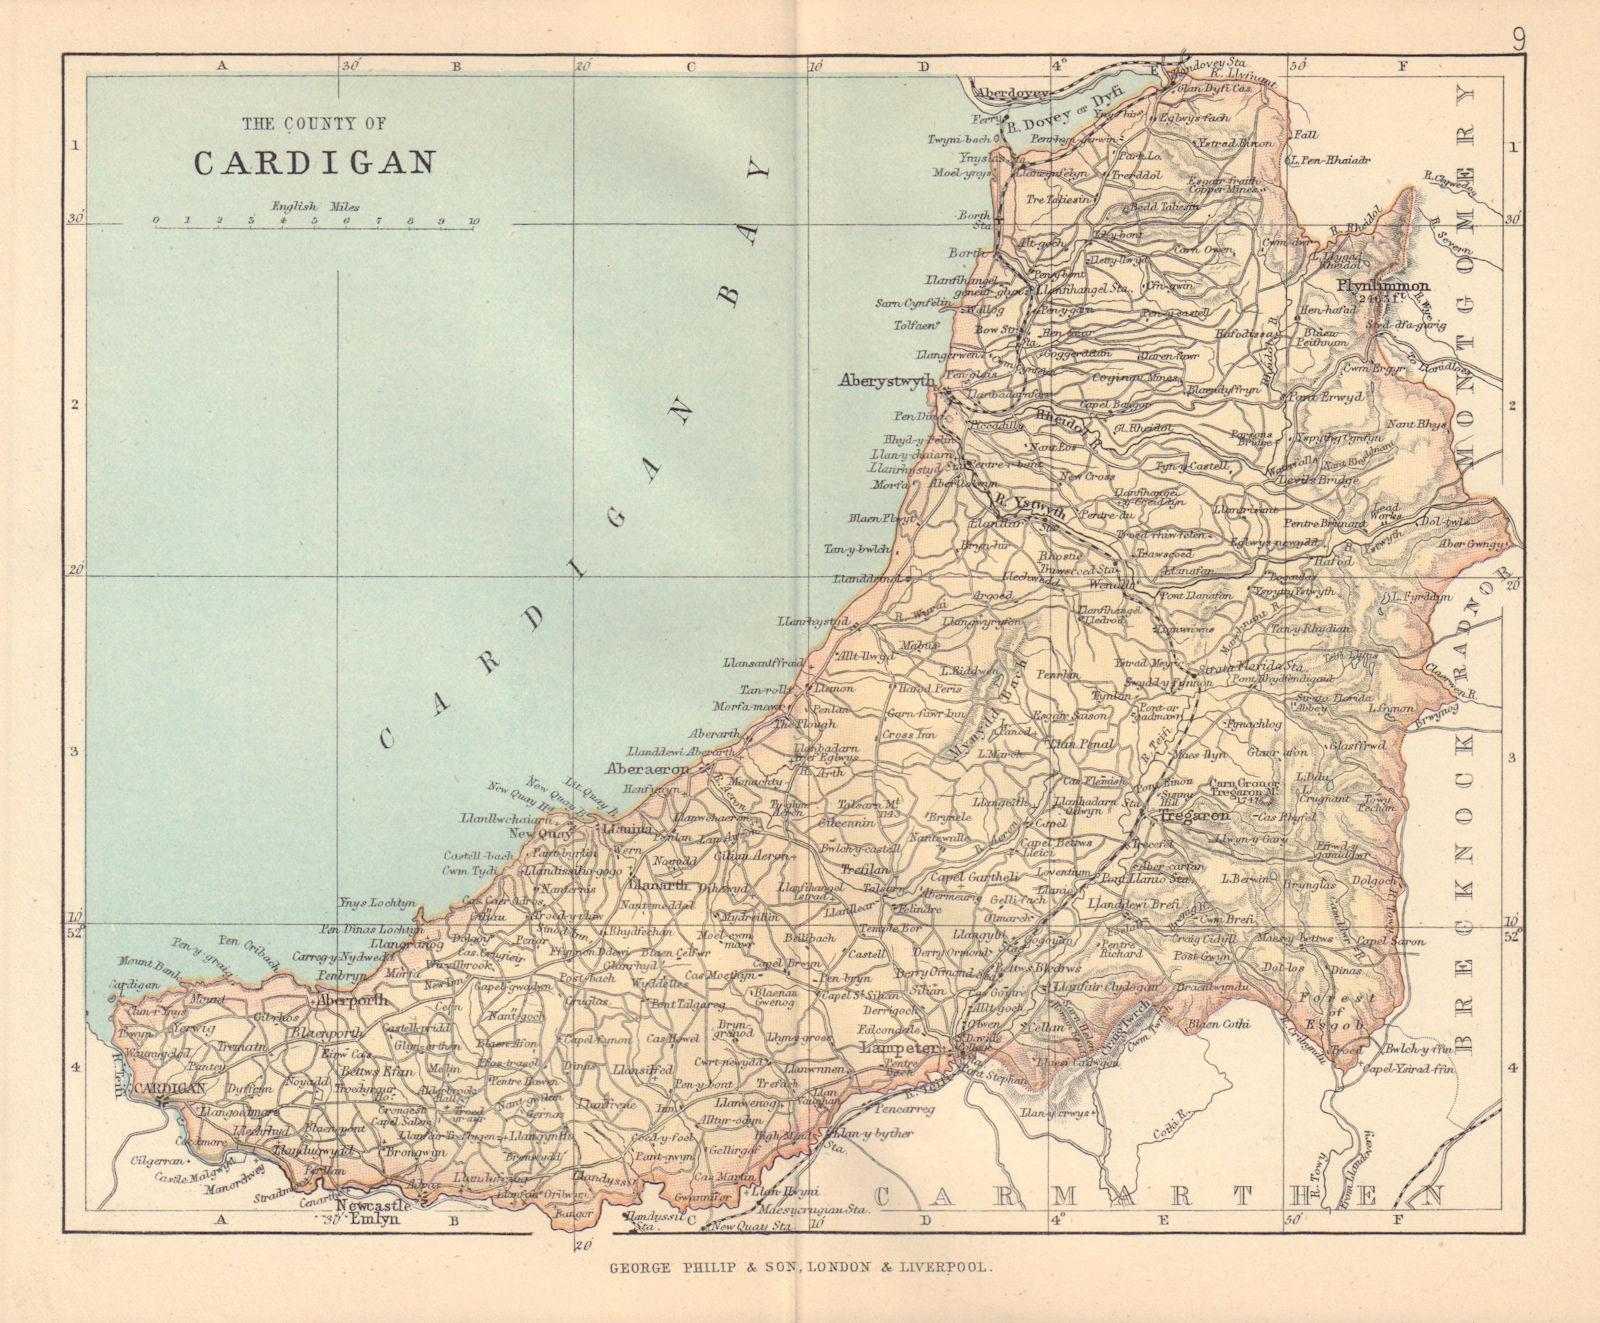 CARDIGANSHIRE "The County of Cardigan" Aberystwyth Wales BARTHOLOMEW 1885 map